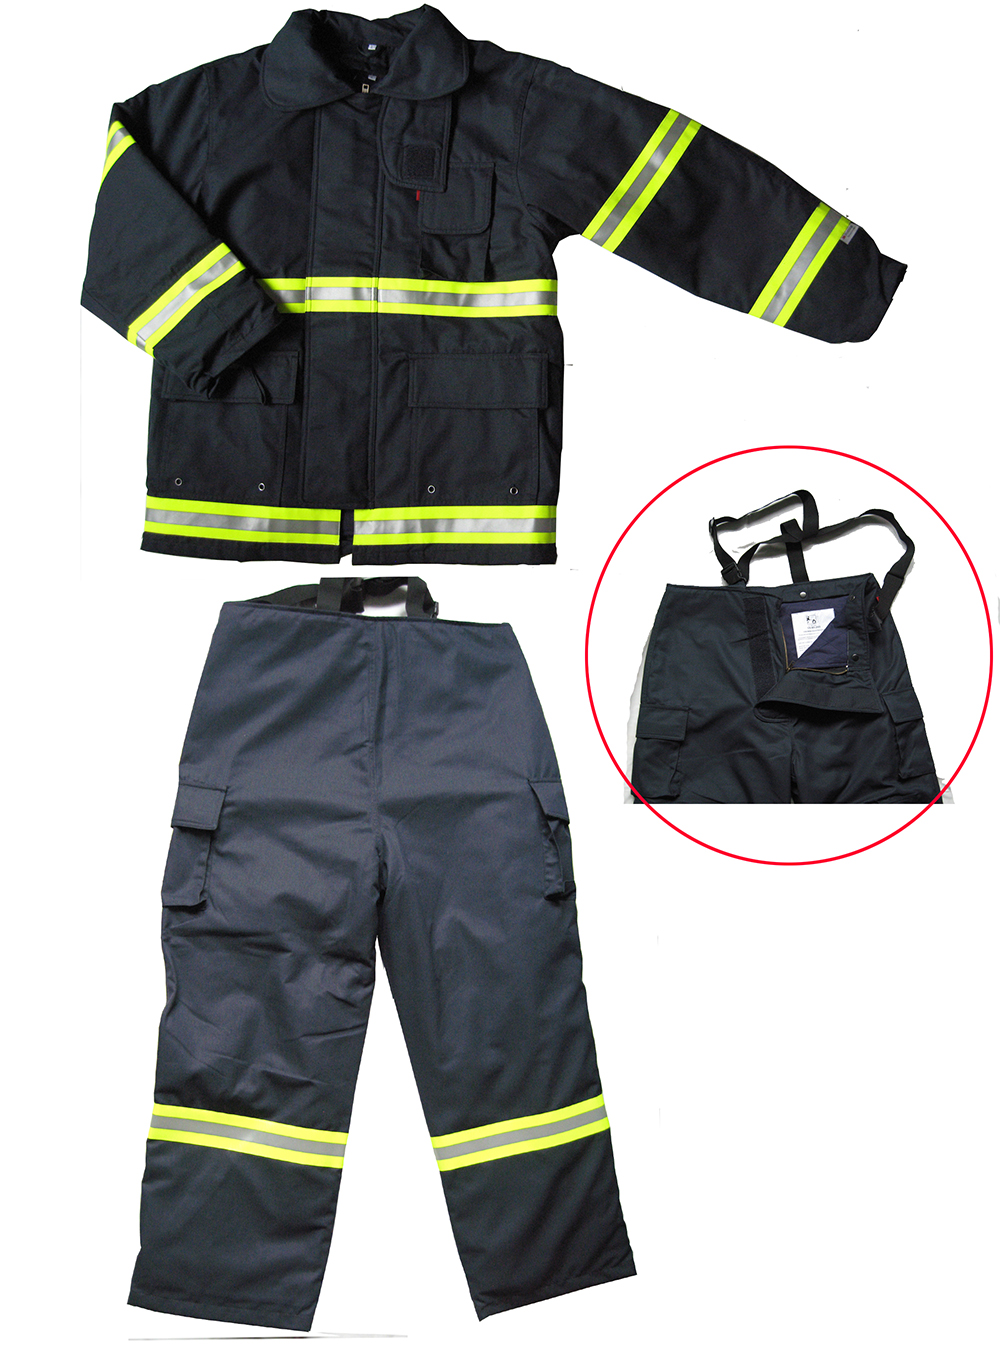 Firemen fire fighting suit